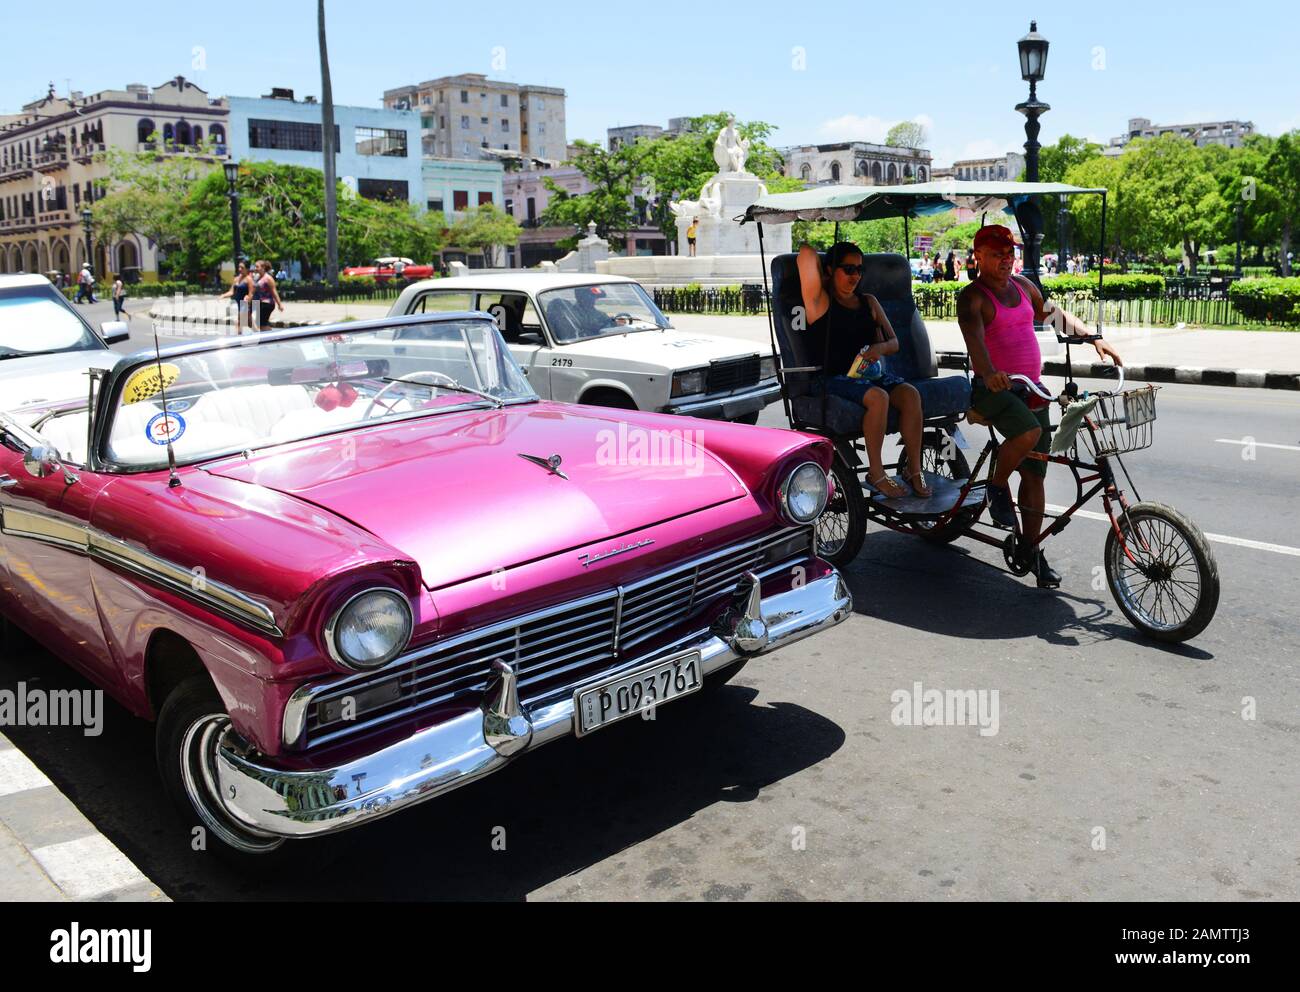 1950 classic vintage voitures américaines à La Havane, Cuba. Banque D'Images